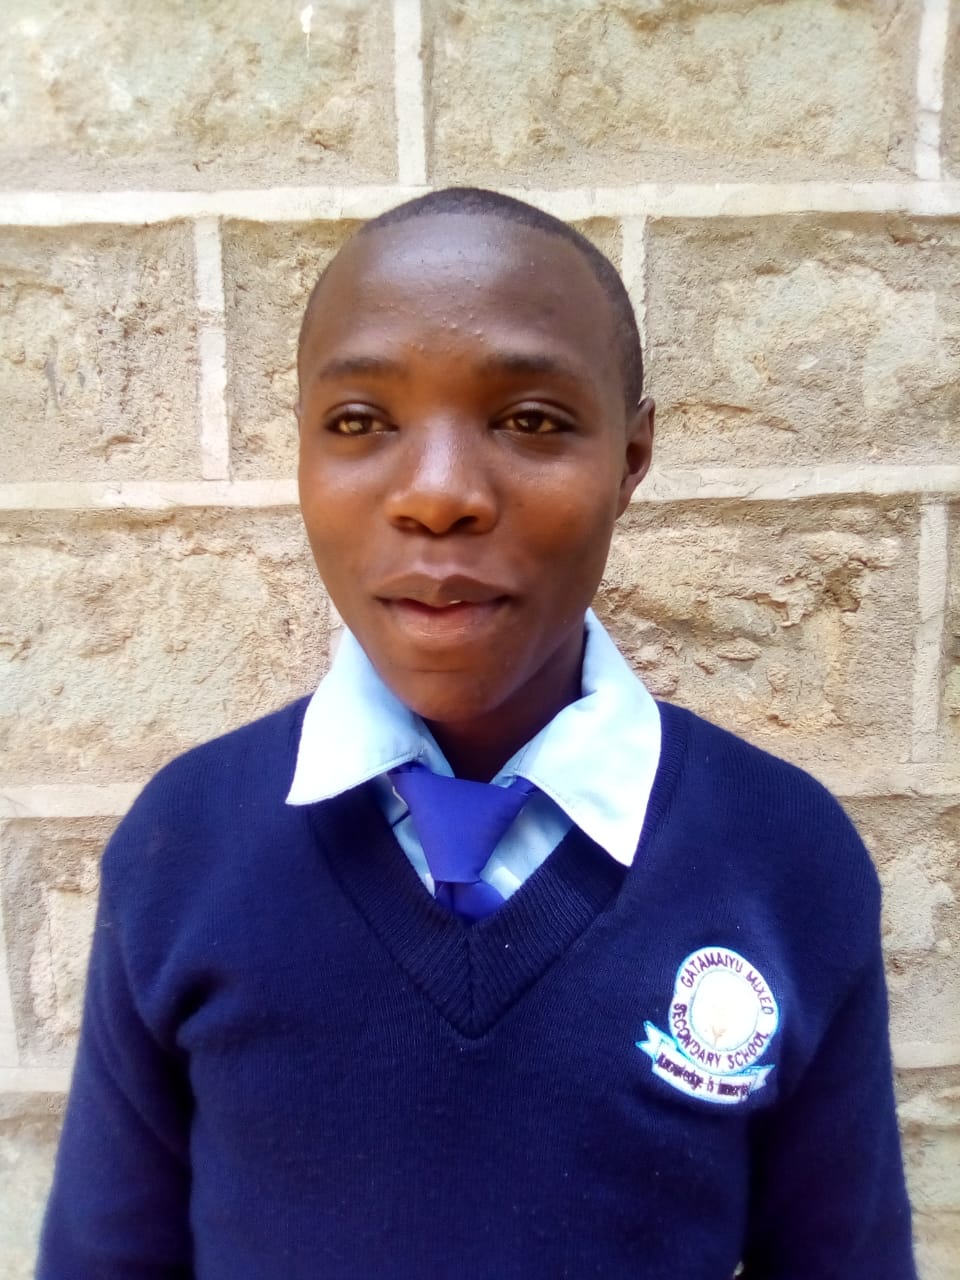 Pate gesucht für Mädchen in Kenia: Jemimah